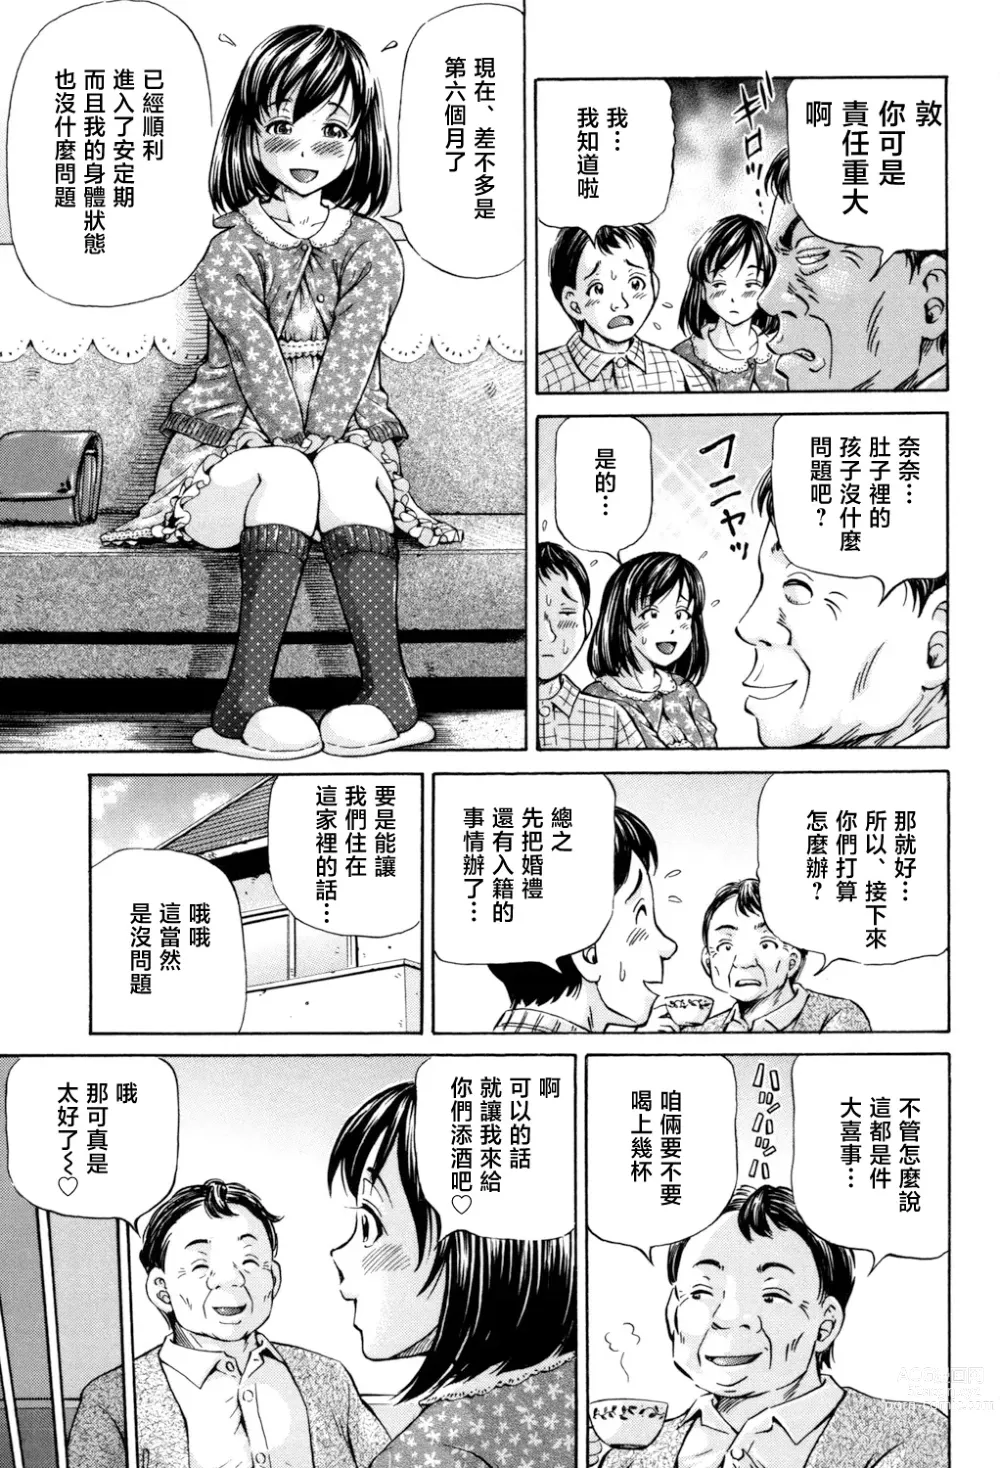 Page 3 of manga Omokage ＝ ones figure